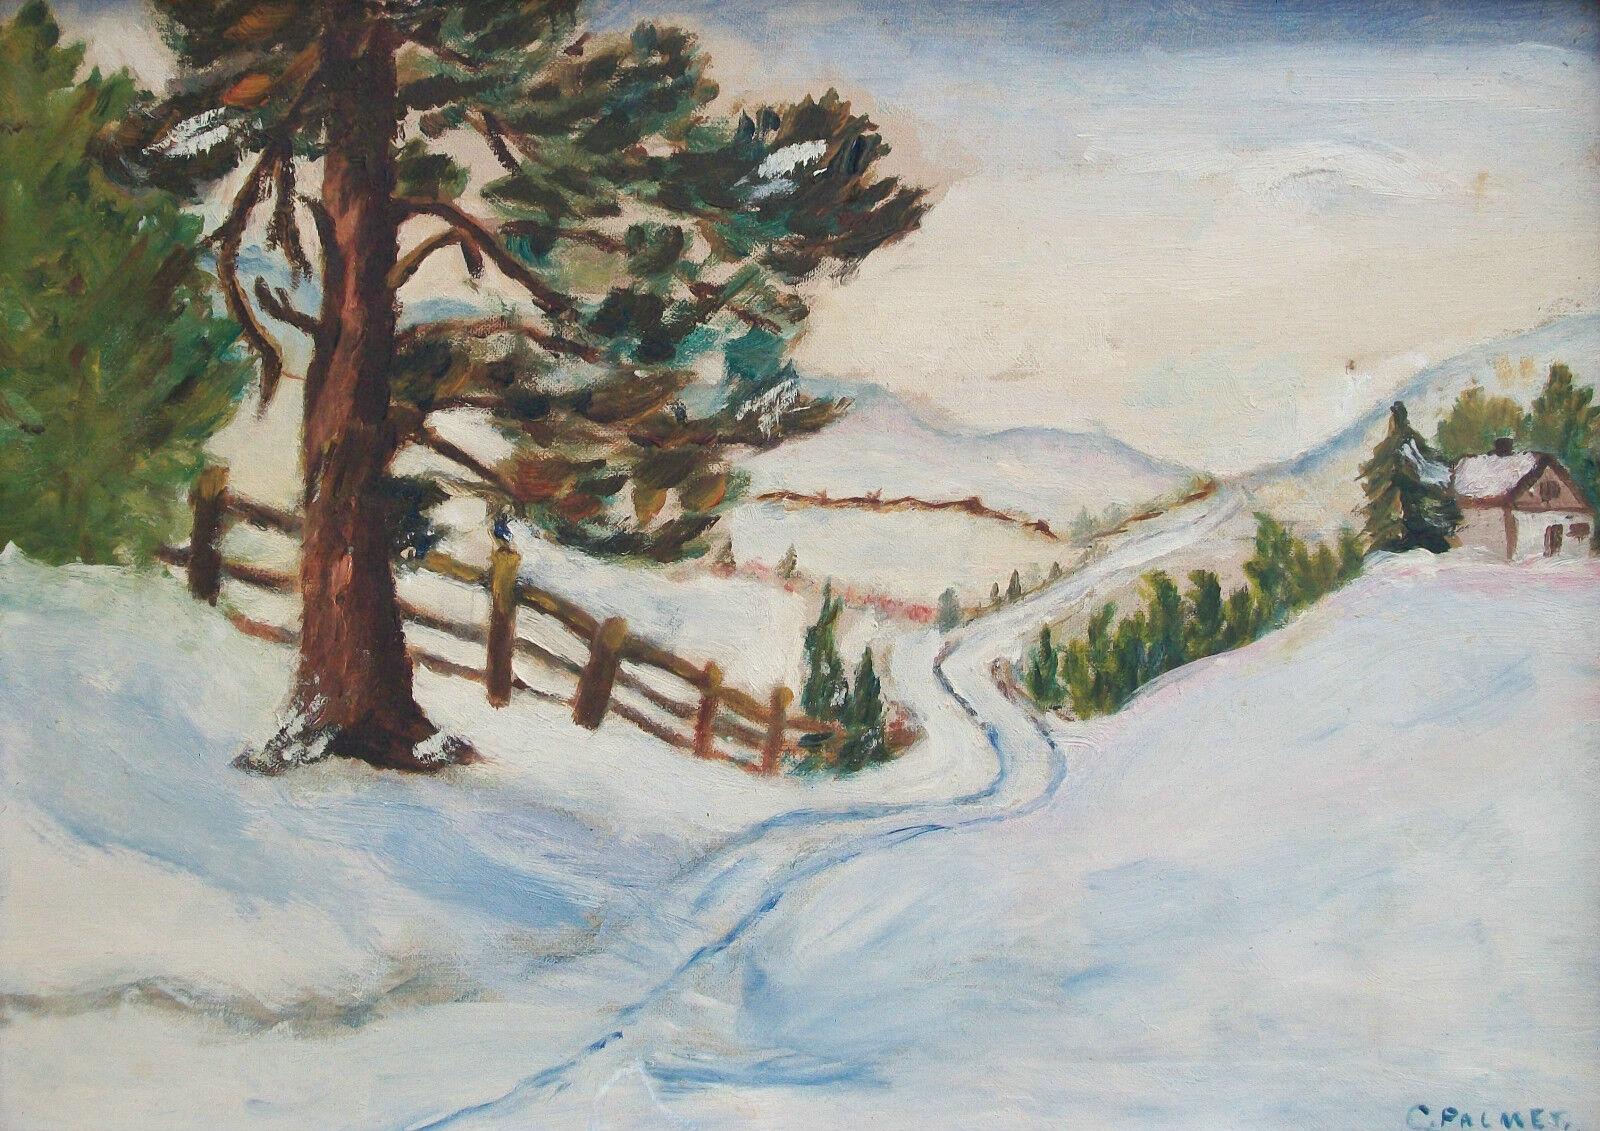 C. PALMER - Peinture à l'huile de style impressionniste sur panneau représentant un paysage d'hiver - signée en bas à droite - cadre ancien - étiquette de la galerie au verso - Canada - début du 20e siècle.

Etat moyen - la peinture n'a pas été vue